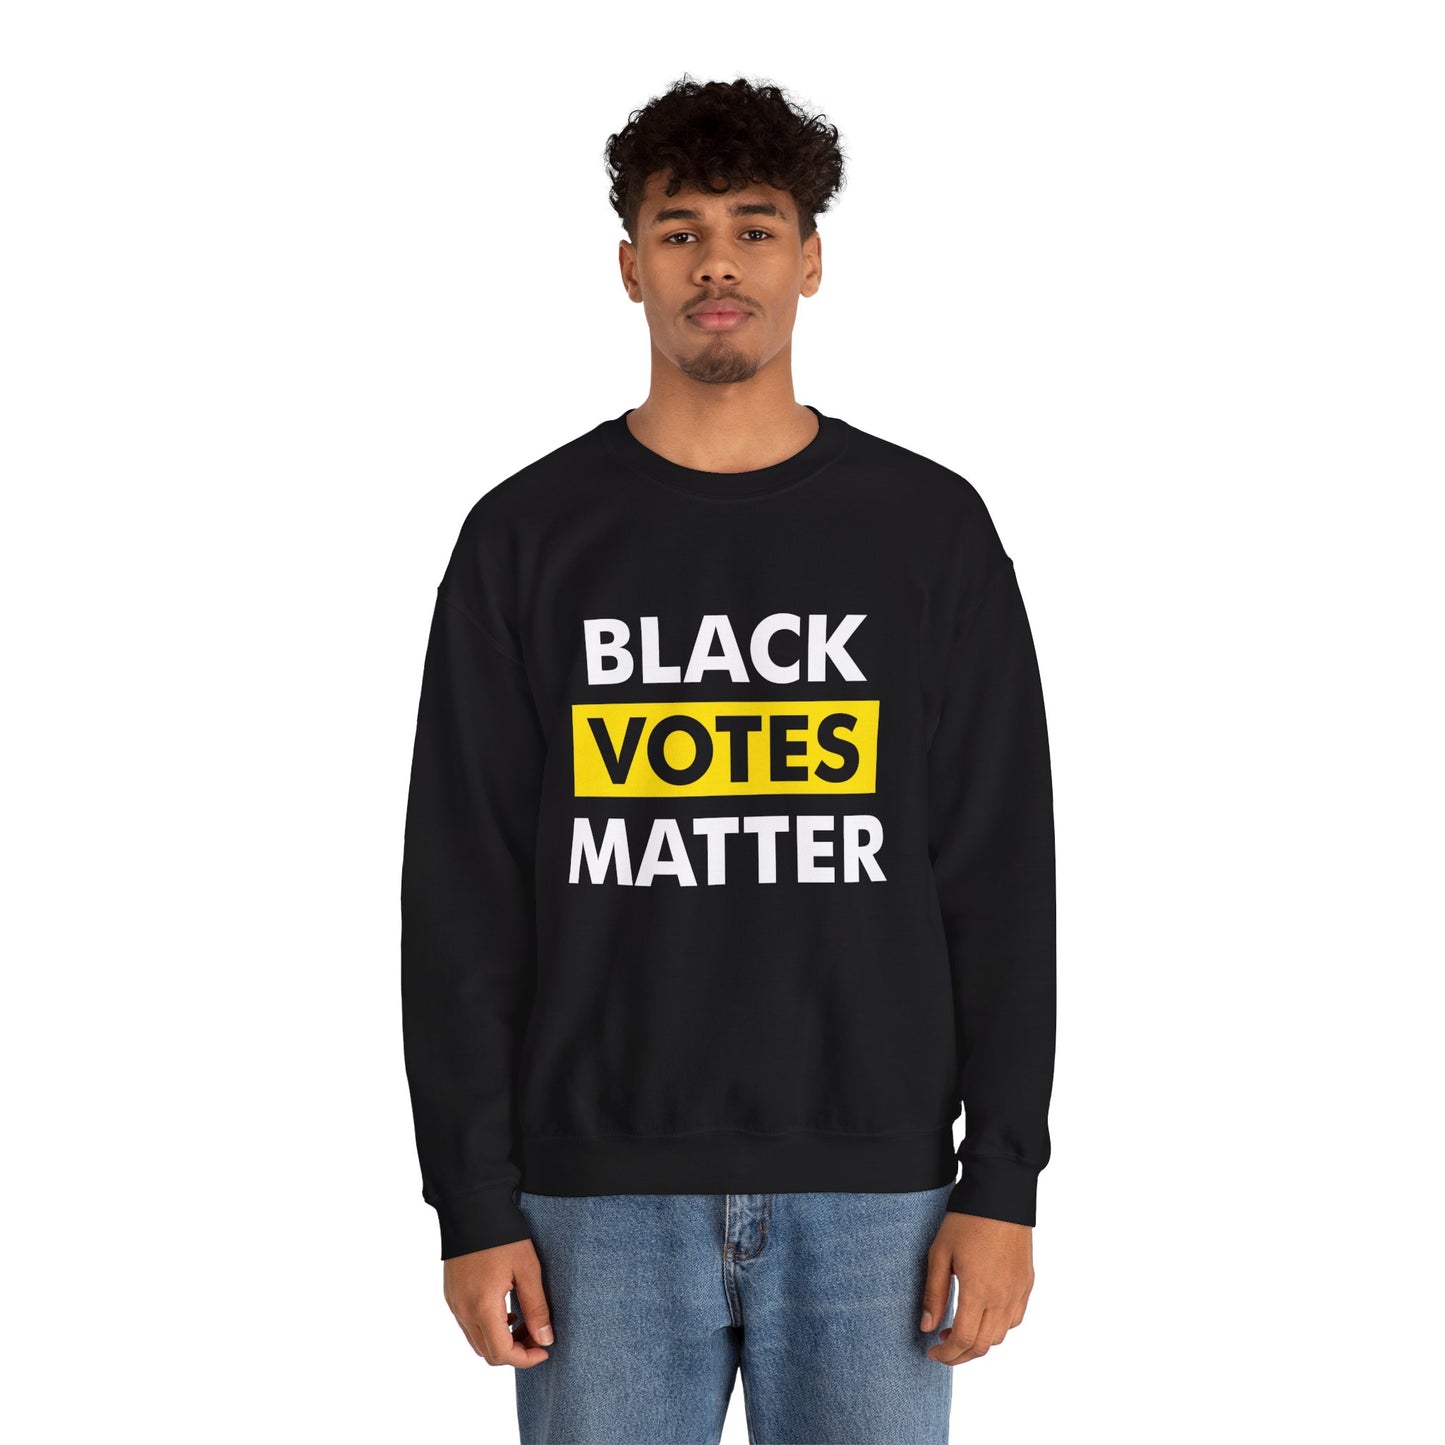 “Black Votes Matter” Unisex Sweatshirt